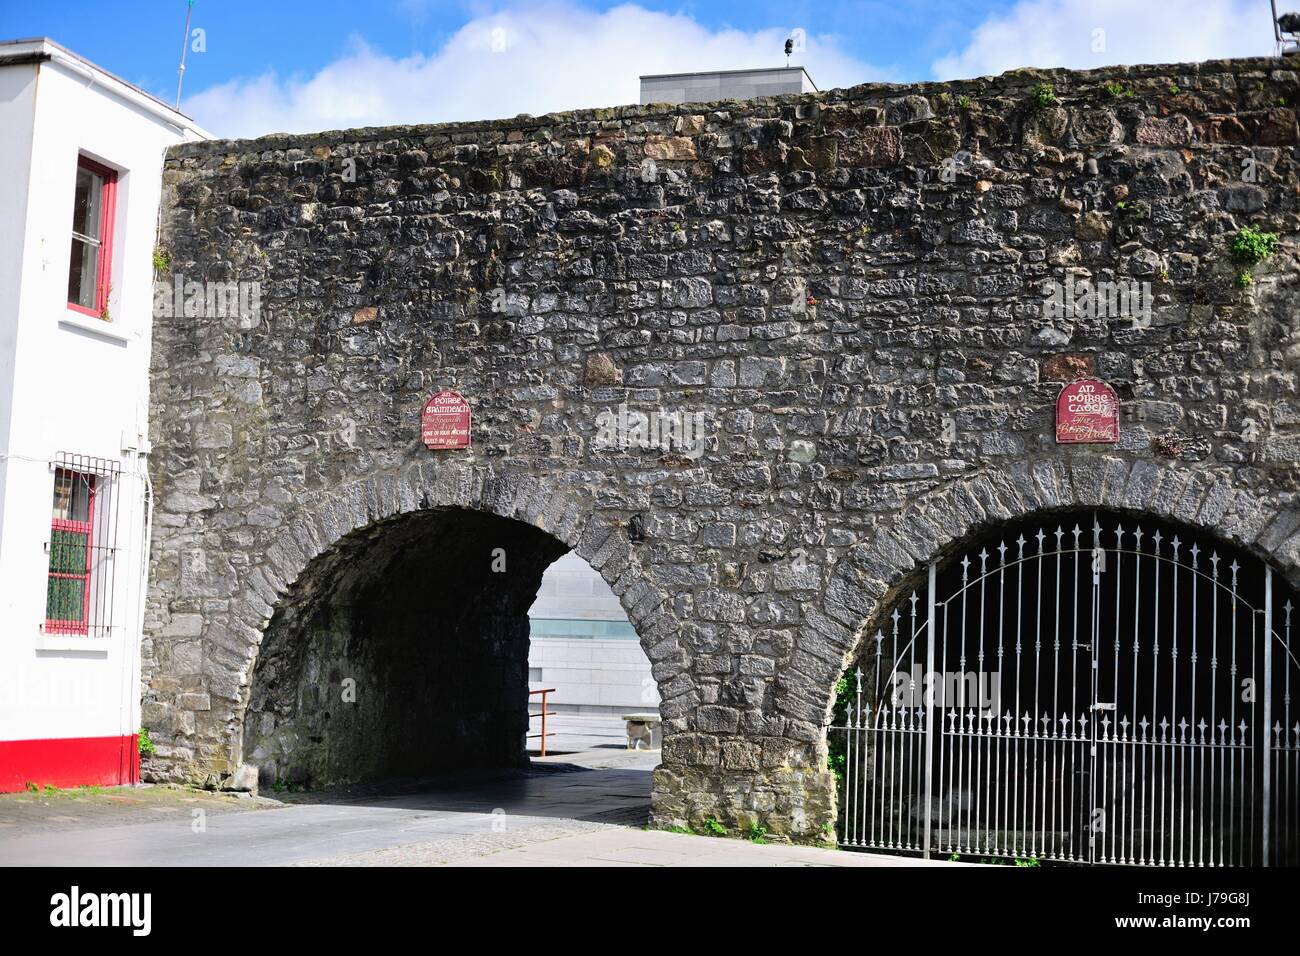 Ein Segment der spanischen Tor in Galway, County Galway, Irland. Das Tor, im Jahre 1584 erbaut, der Bogen wurde eine Verlängerung der ursprünglichen Stadtmauer. Stockfoto